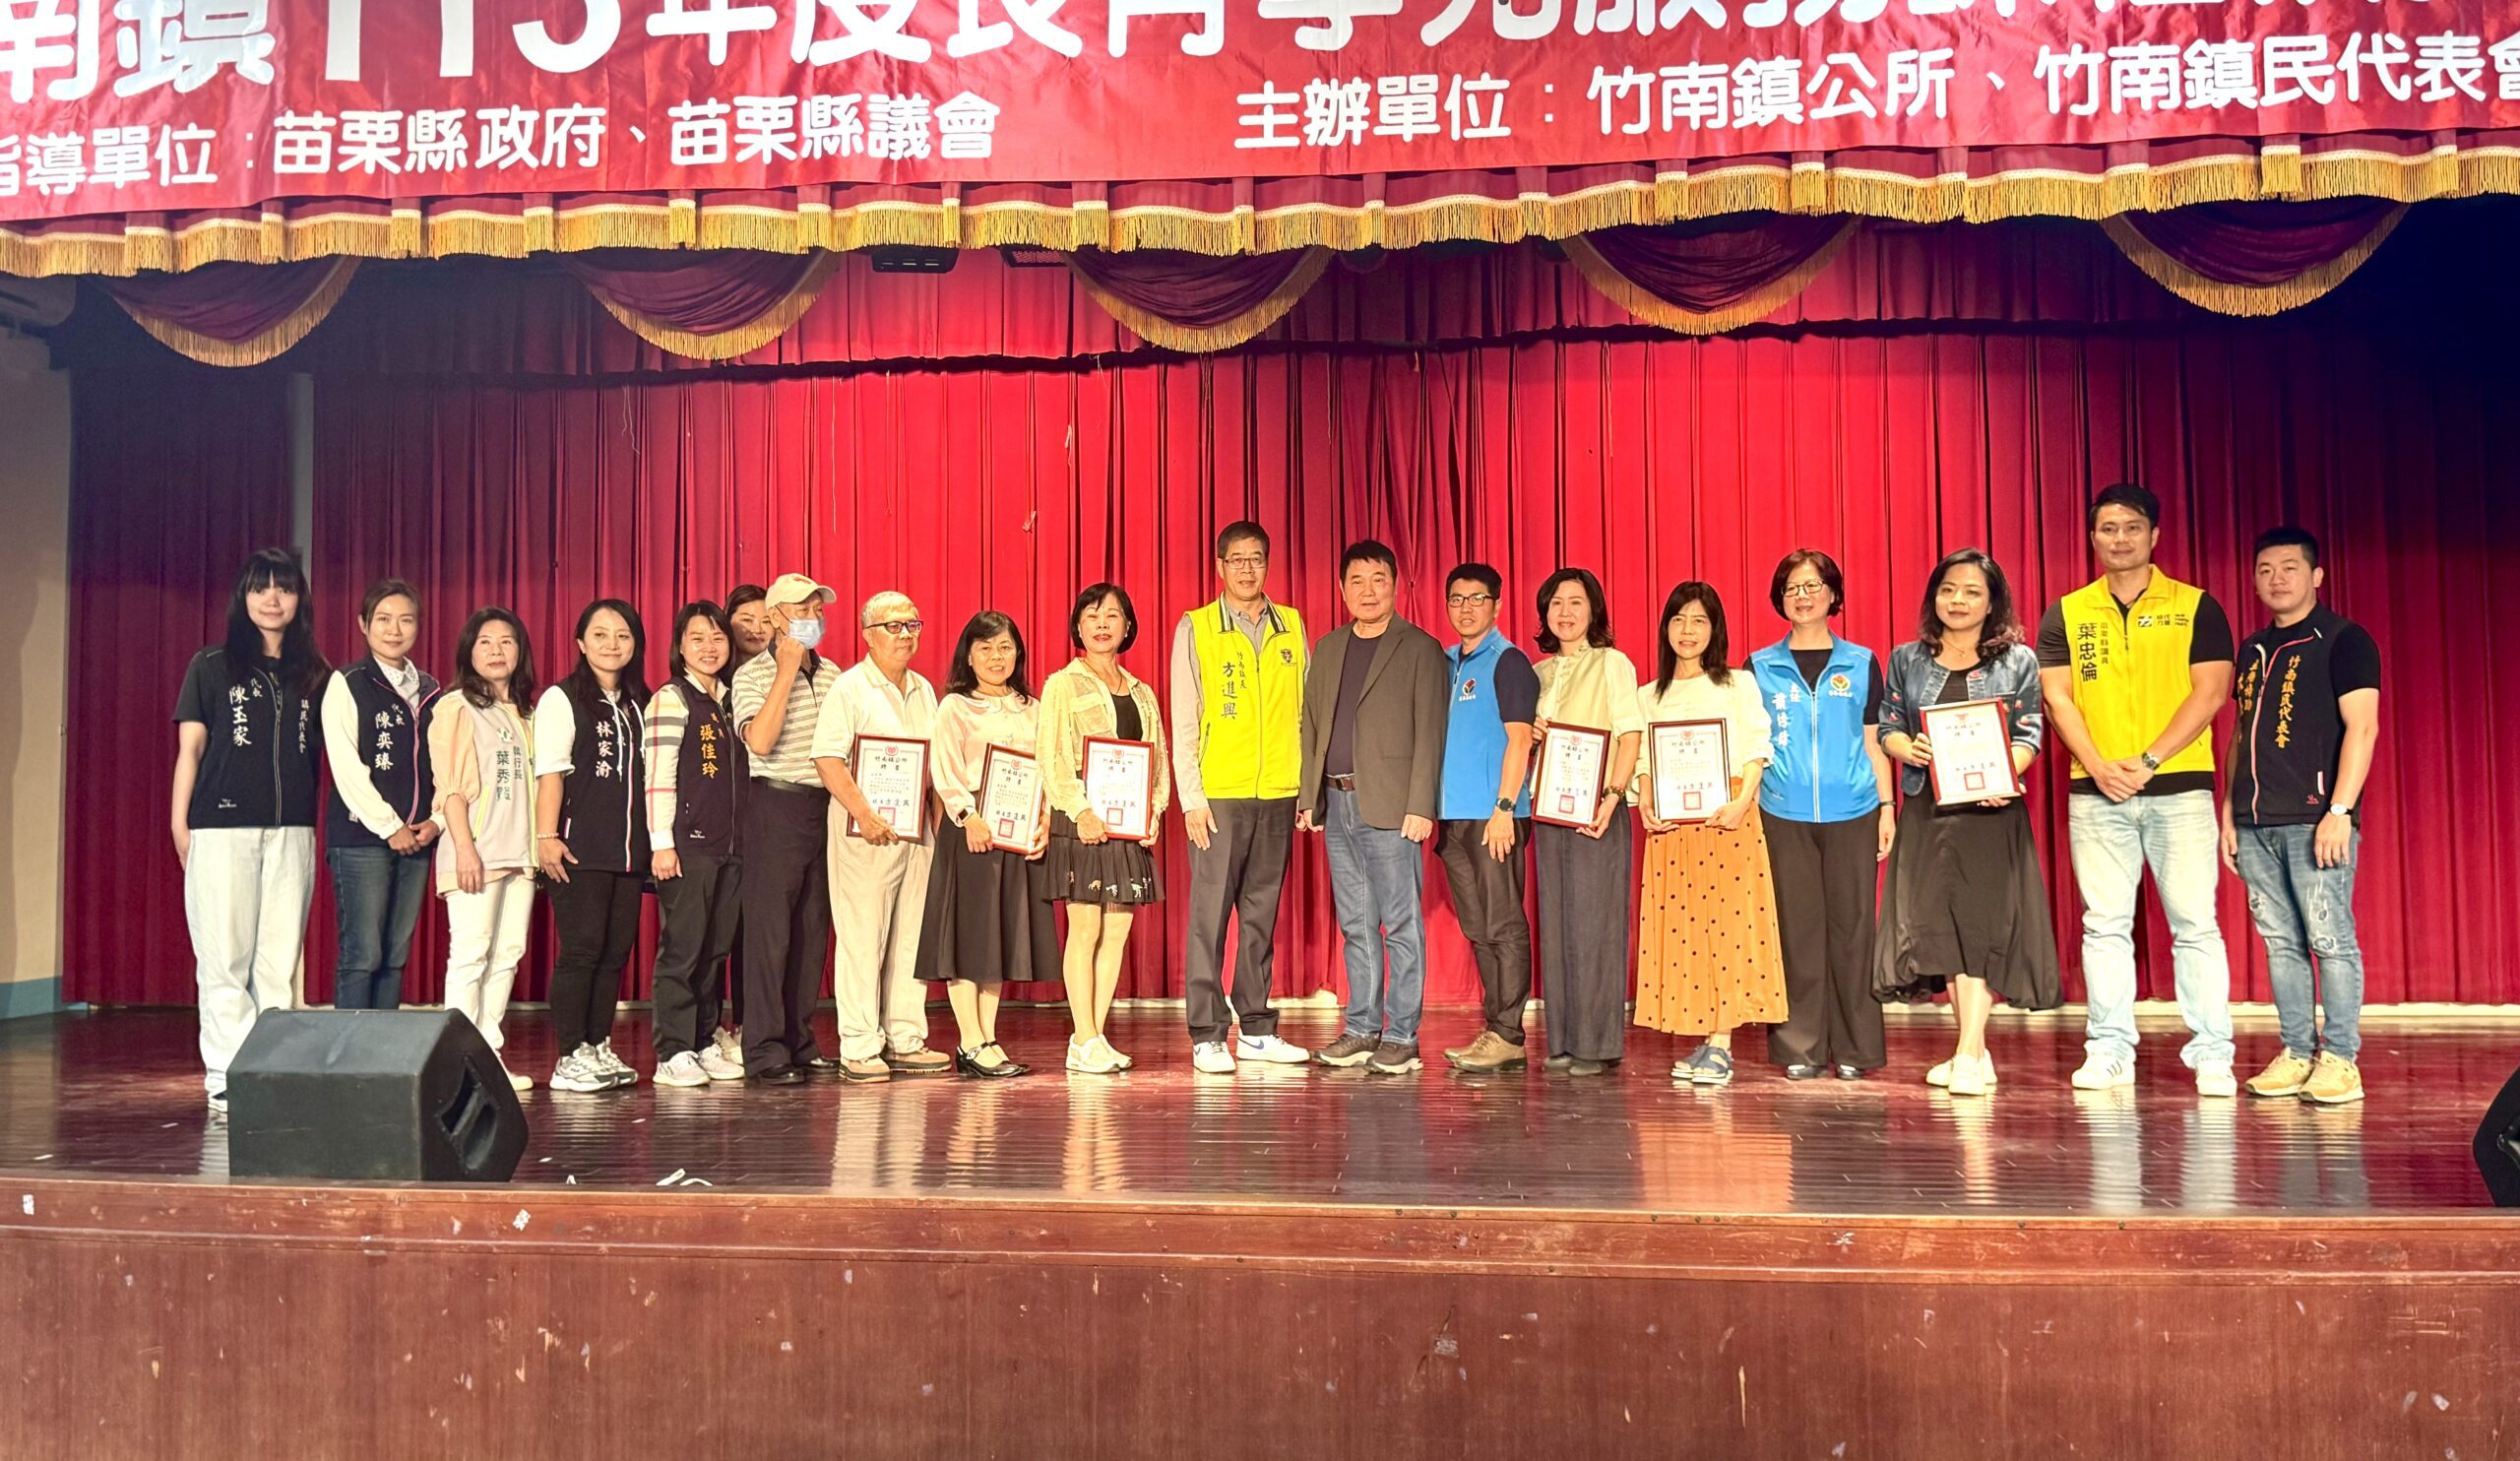 竹南鎮113年長青學苑服務課程  今天舉辦開學典禮